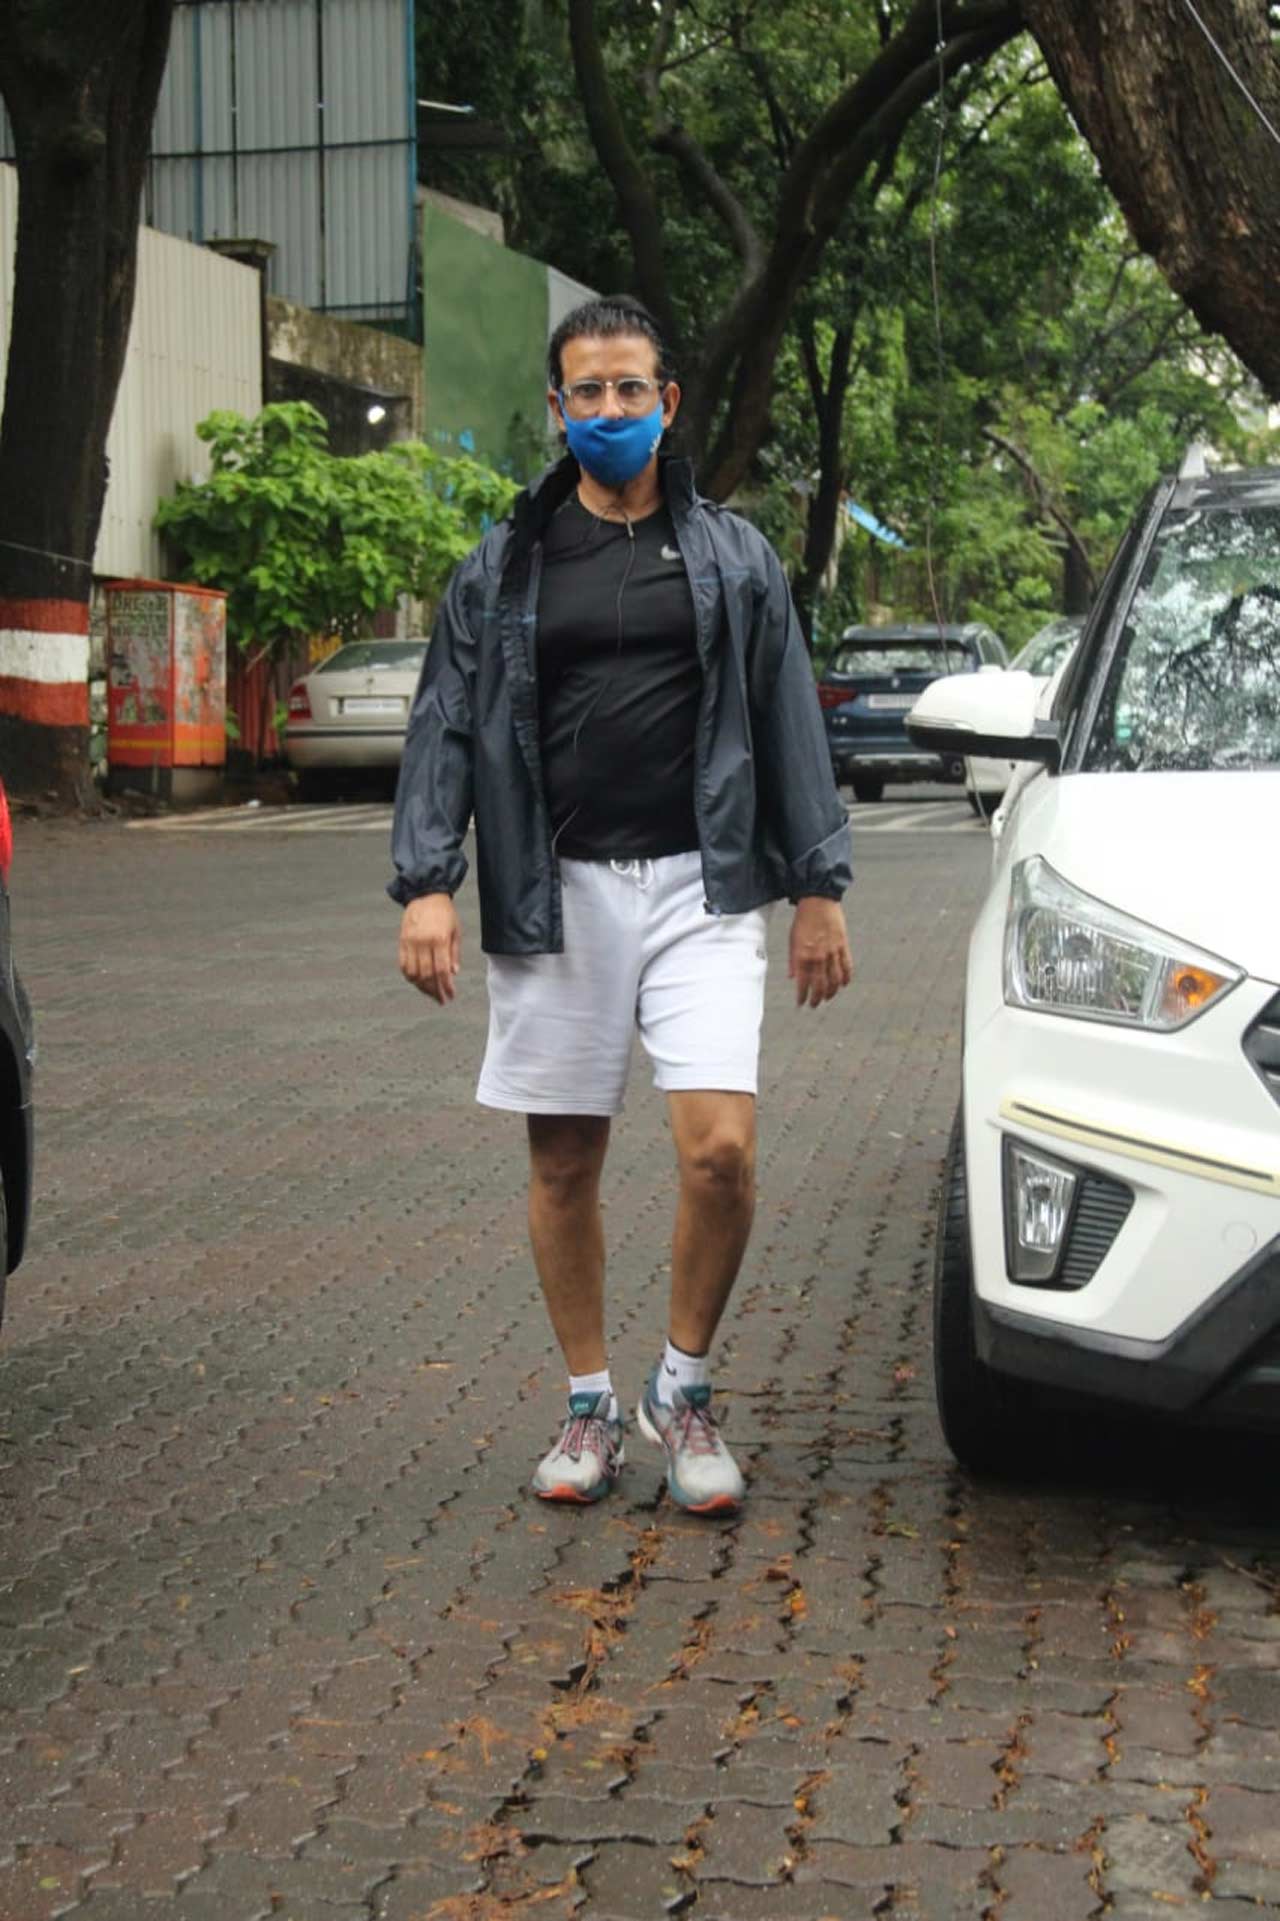 Sharman Joshi was also spotted in Bandra, Mumbai.